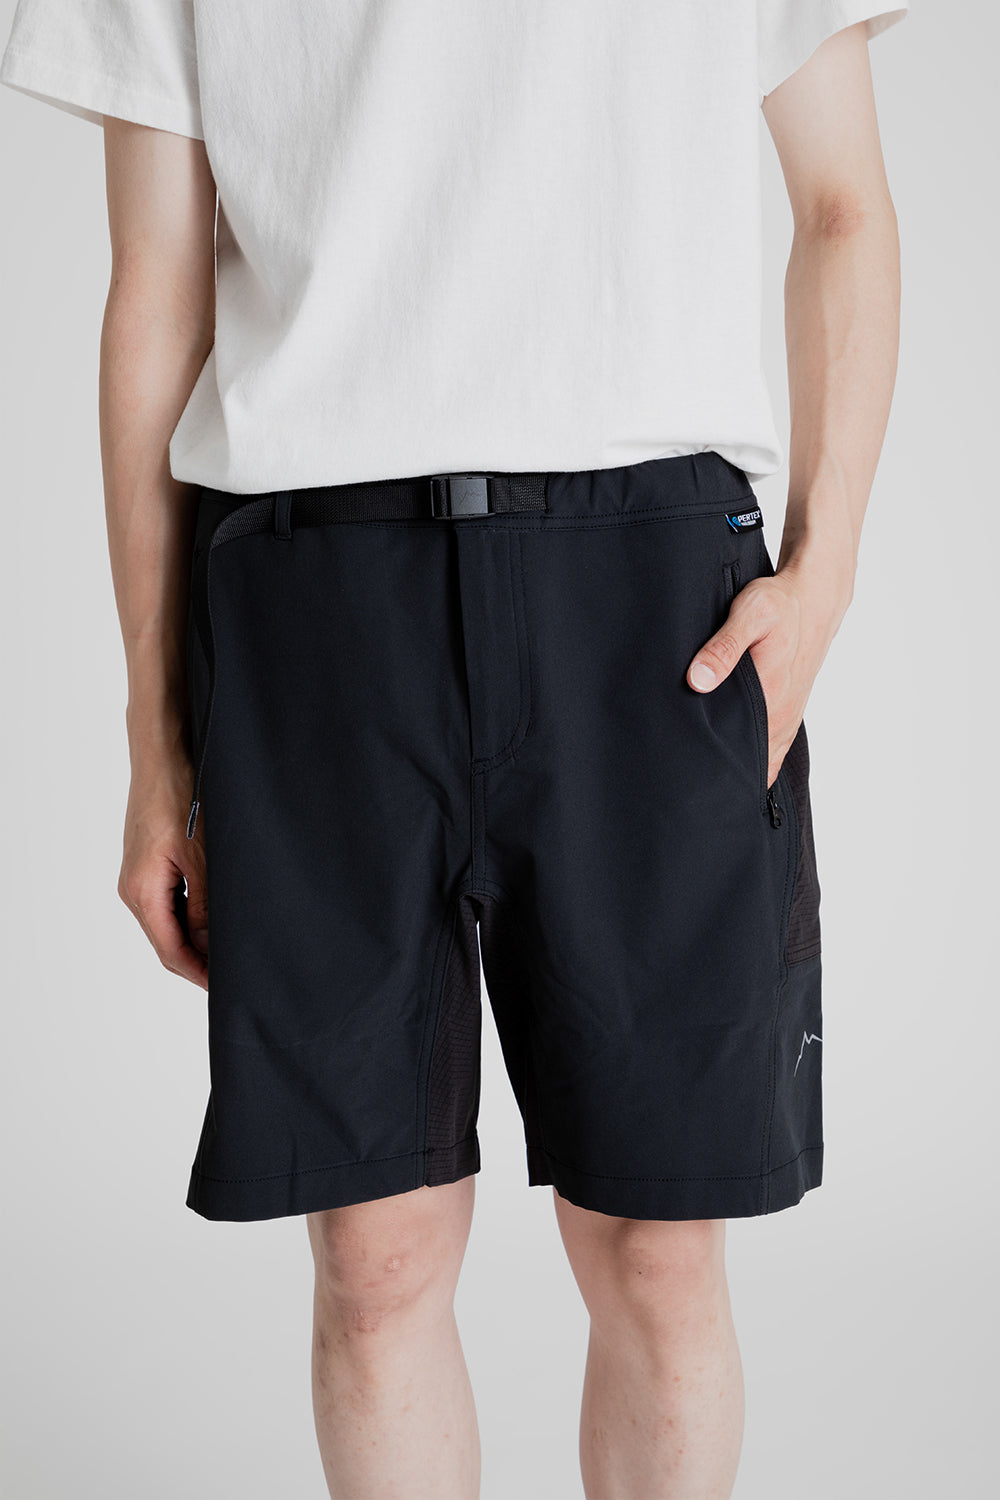 Cayl EQ Hybrid Shorts in Black